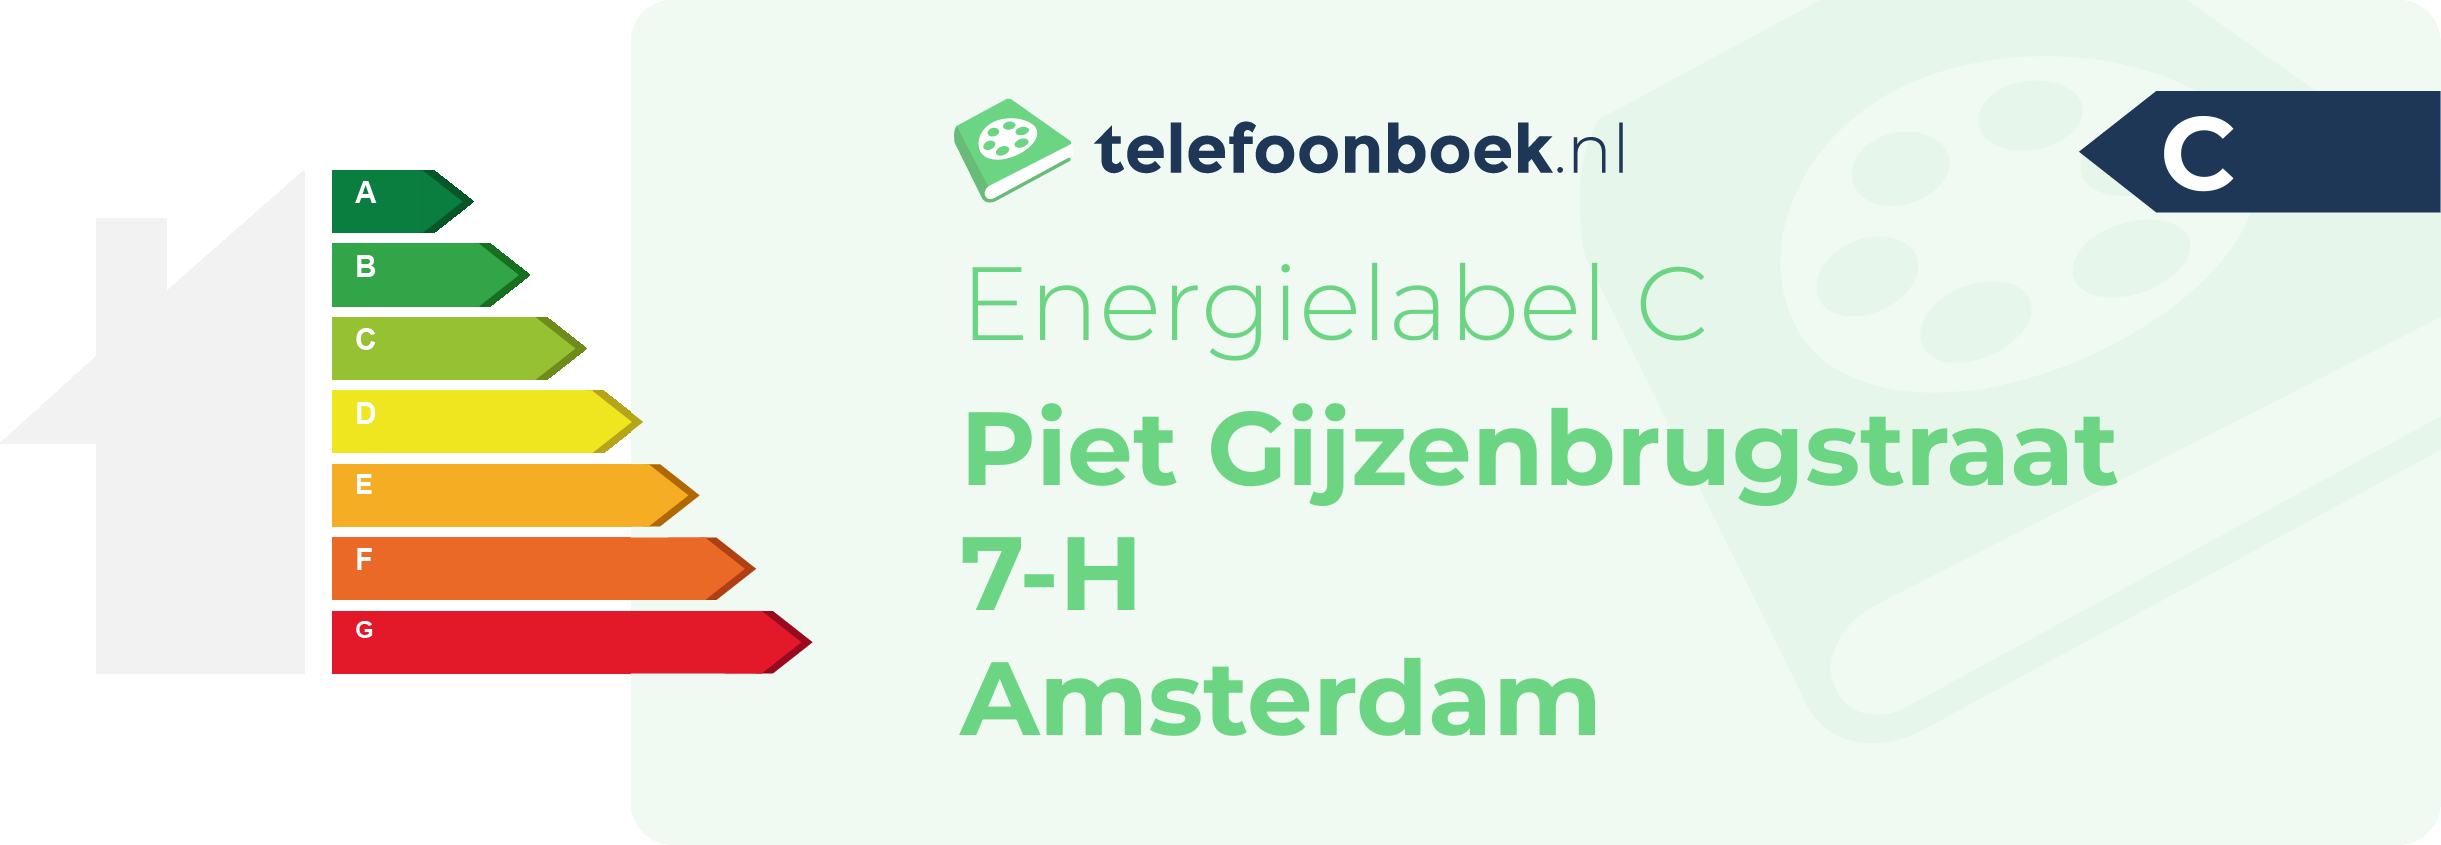 Energielabel Piet Gijzenbrugstraat 7-H Amsterdam